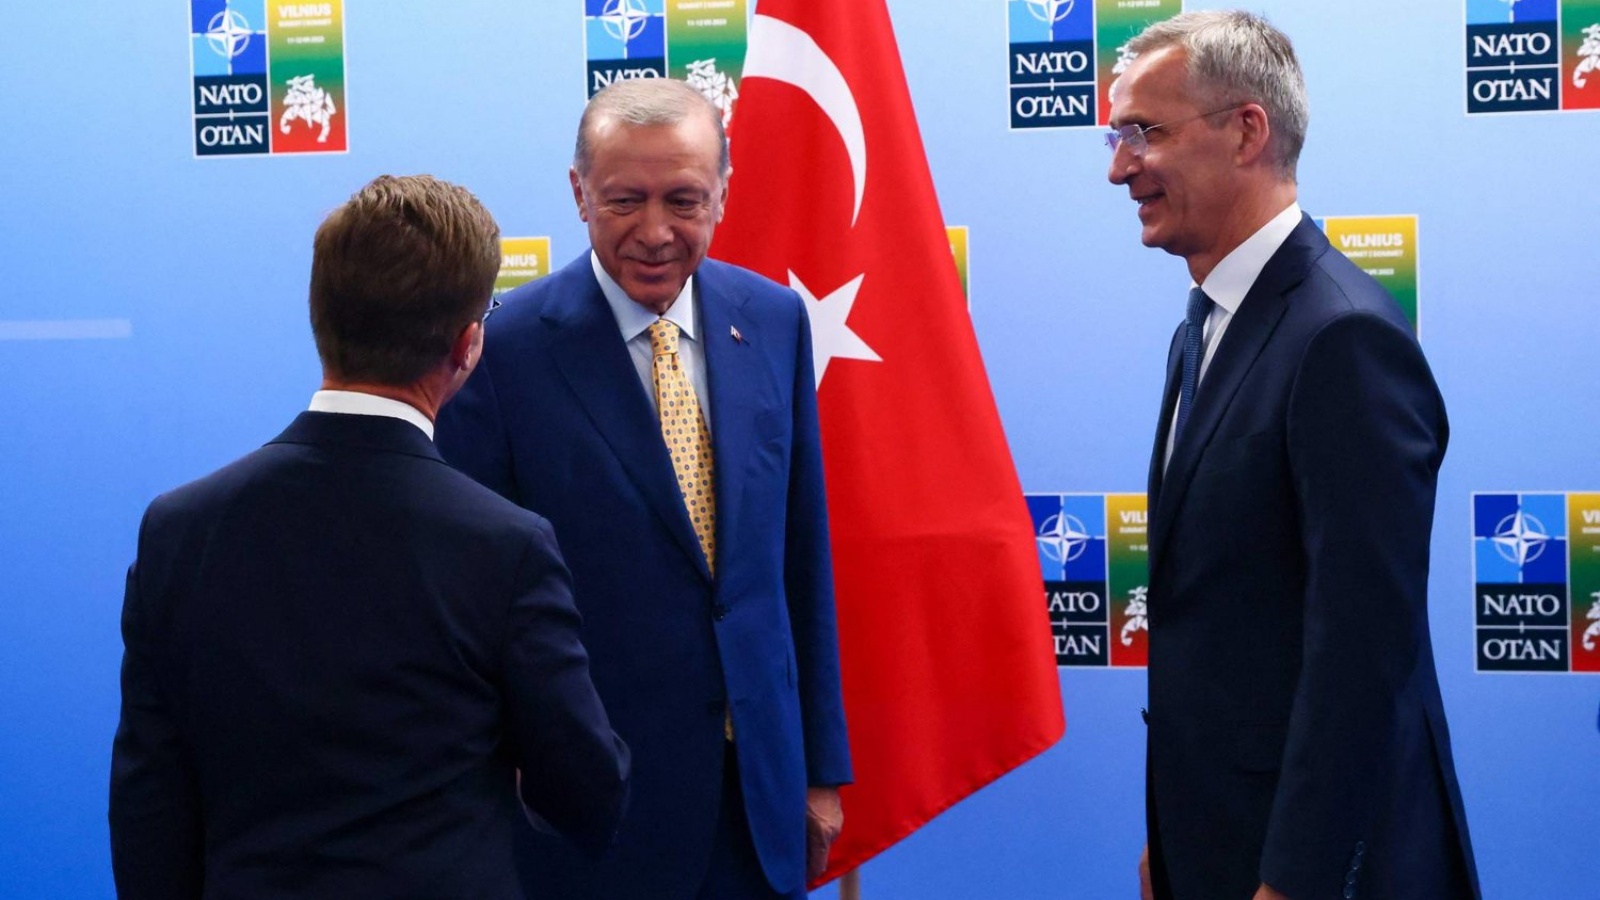 إردوغان لحظة وصوله إلى مقر «الناتو» وإلى جانبه رئيس وزراء السويد والأمين العام للناتو 